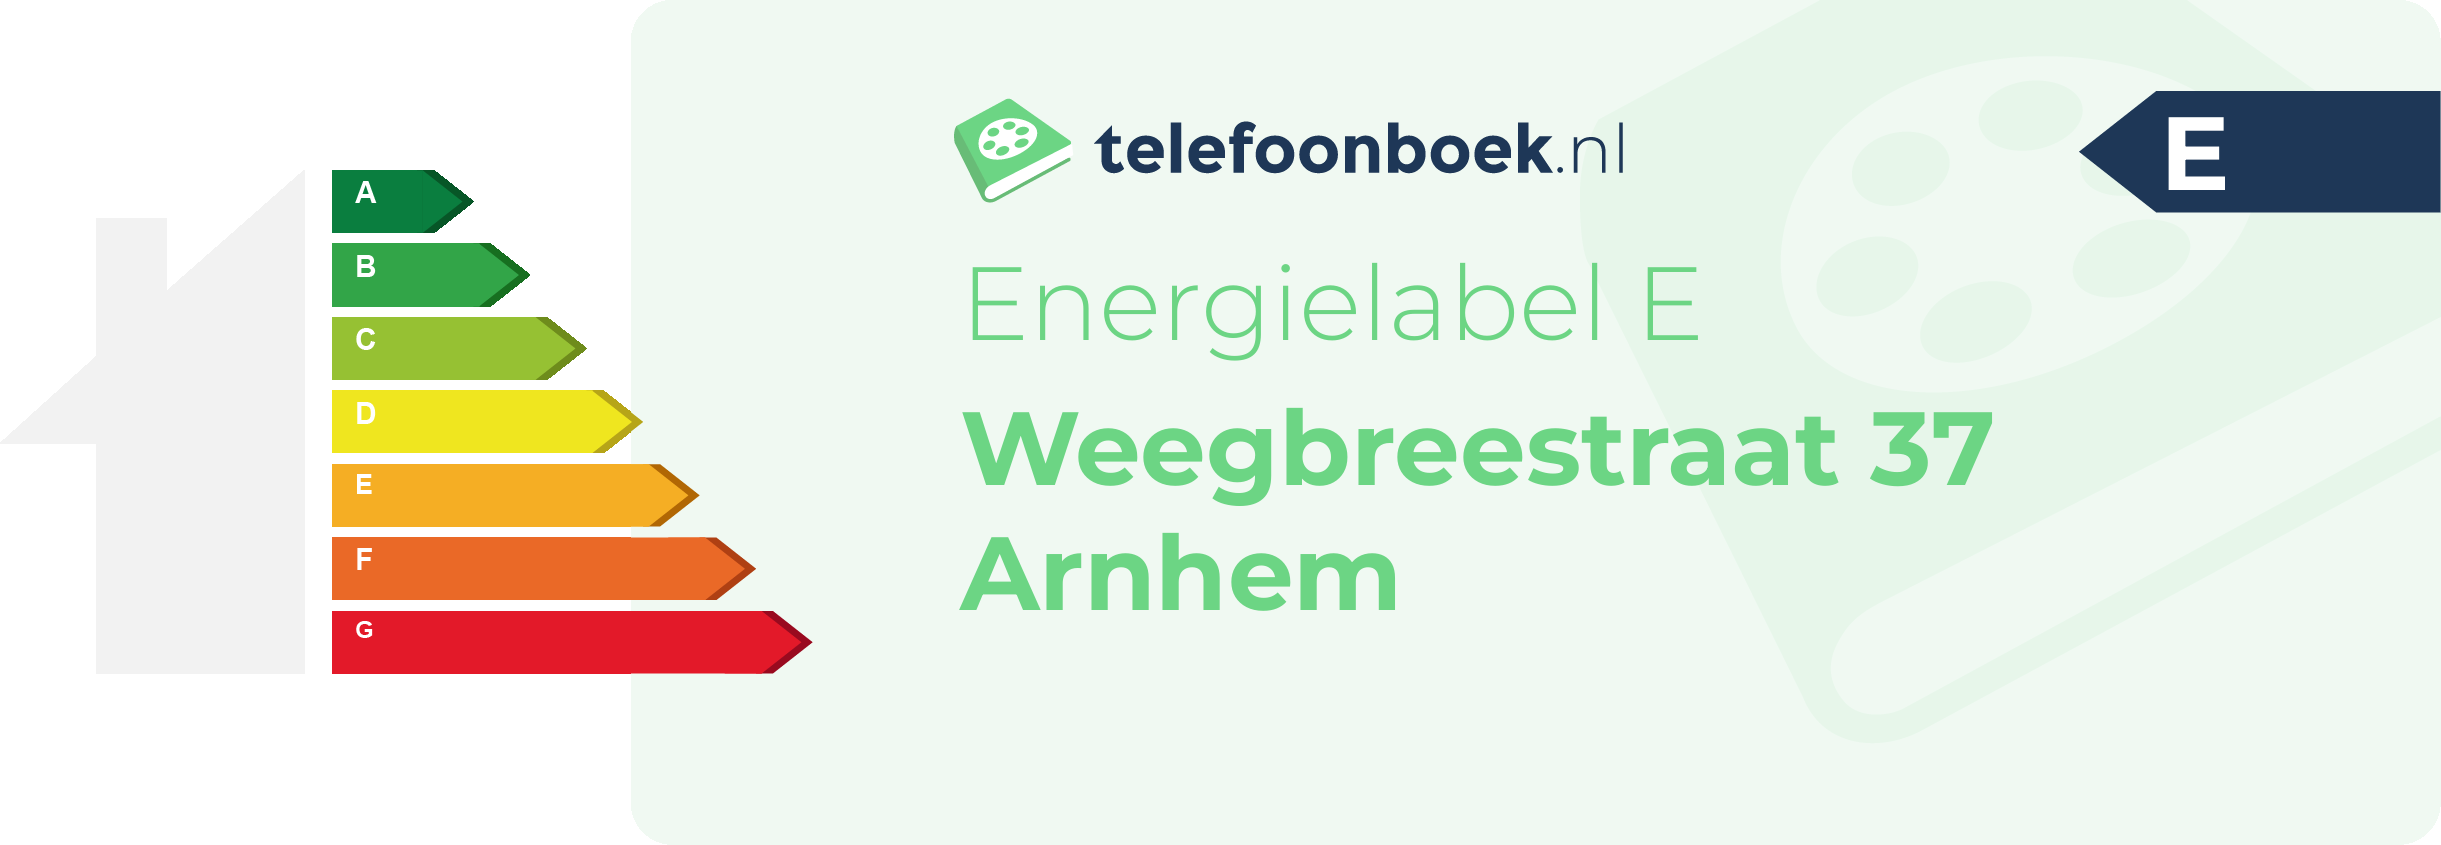 Energielabel Weegbreestraat 37 Arnhem